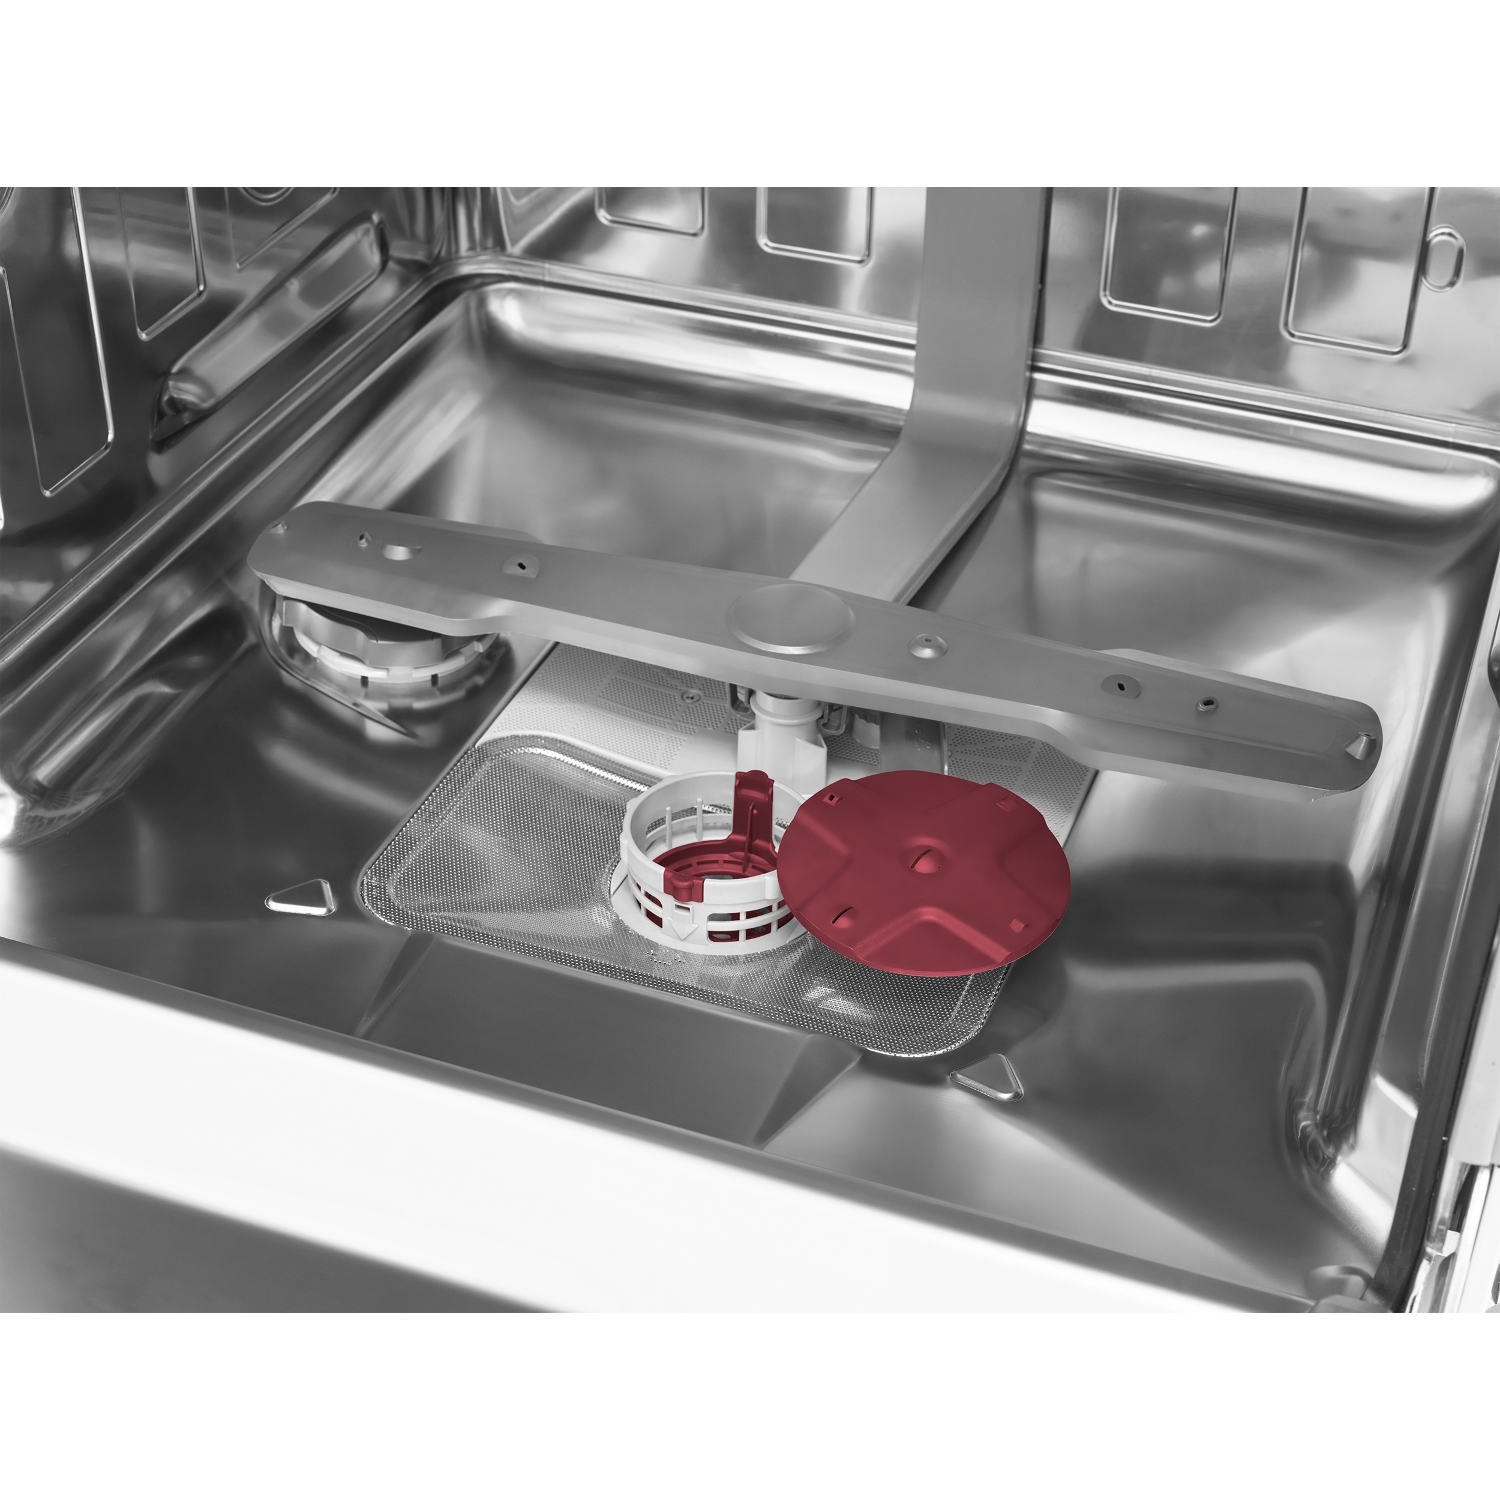 Blomberg LDV42244 Full Size Integrated Dishwasher - 14 Place Settings - 4